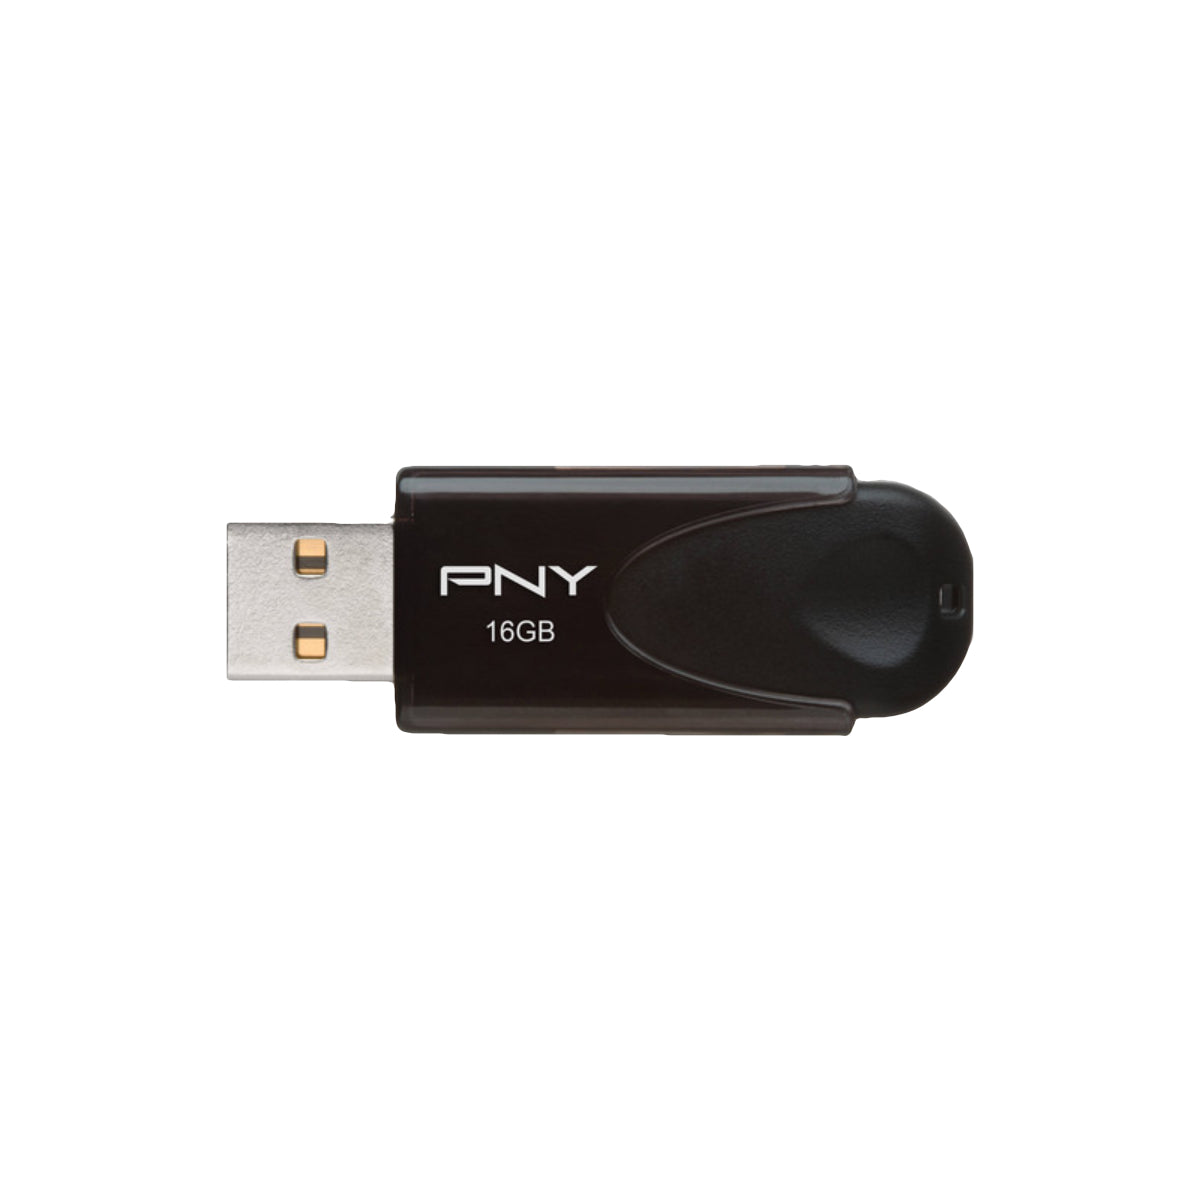 PNY 16GB USB 2.0 Flash Drive